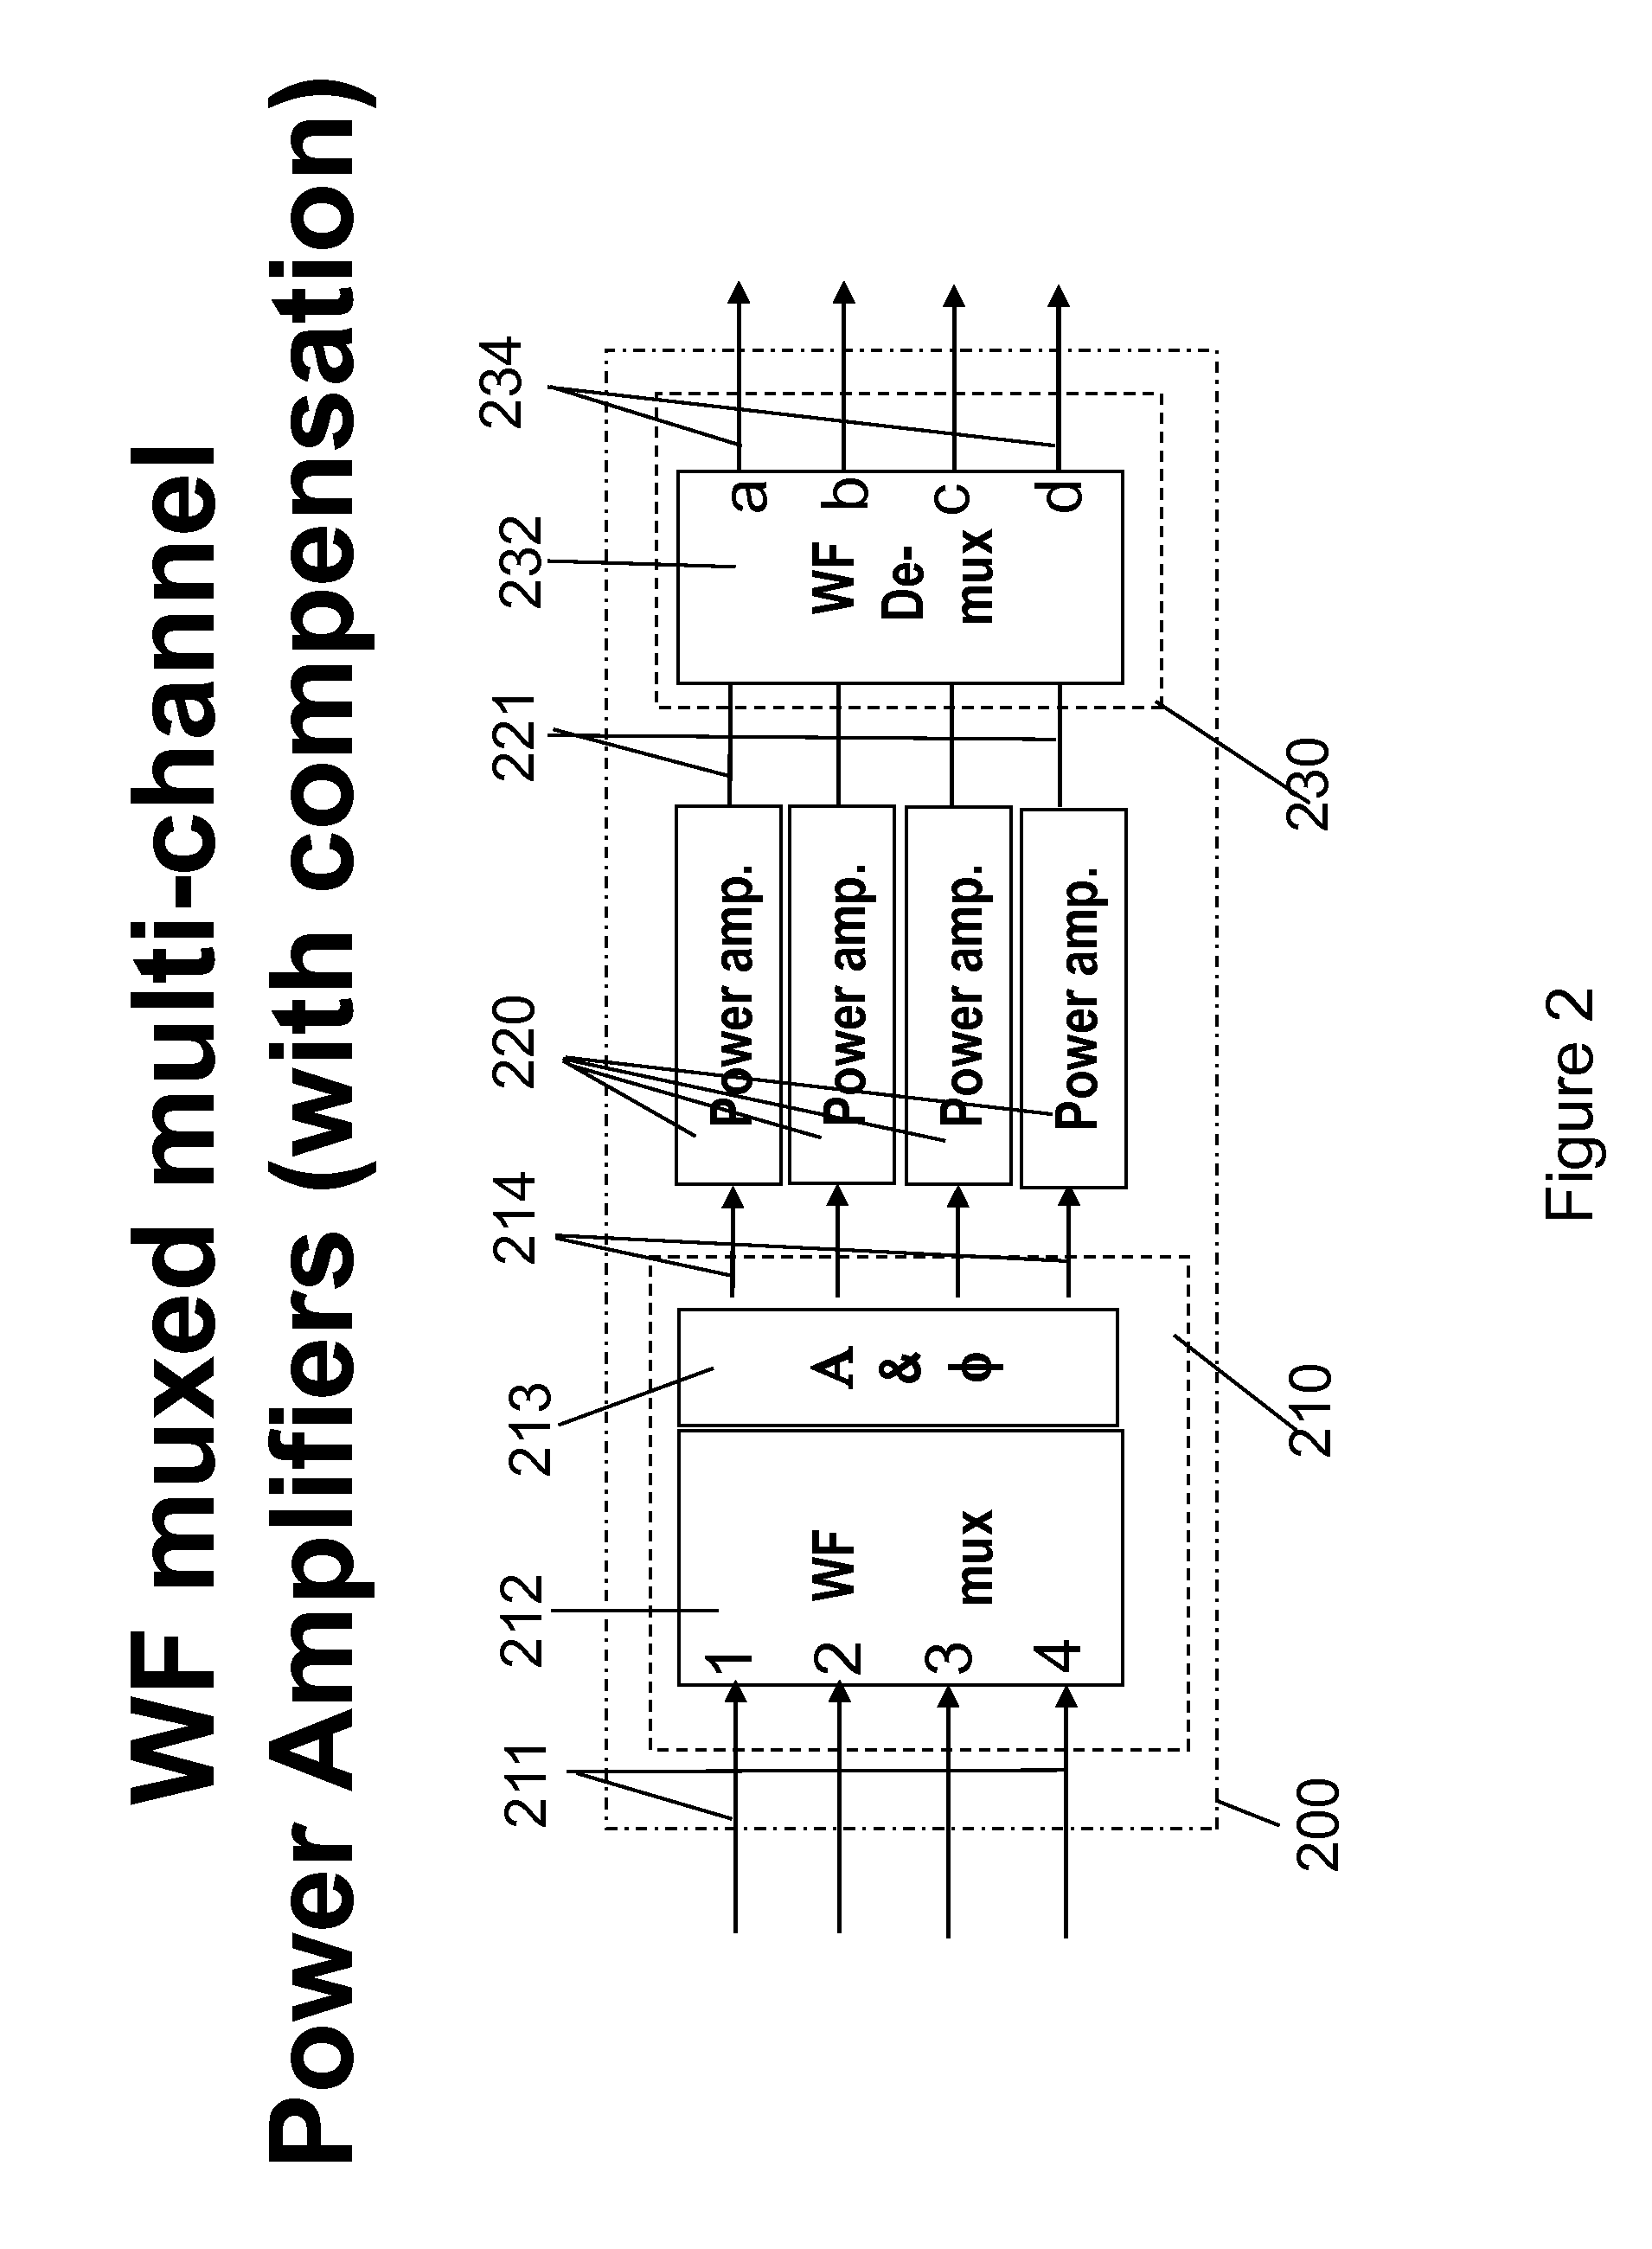 Flexible multi-channel amplifiers via wavefront muxing techniques